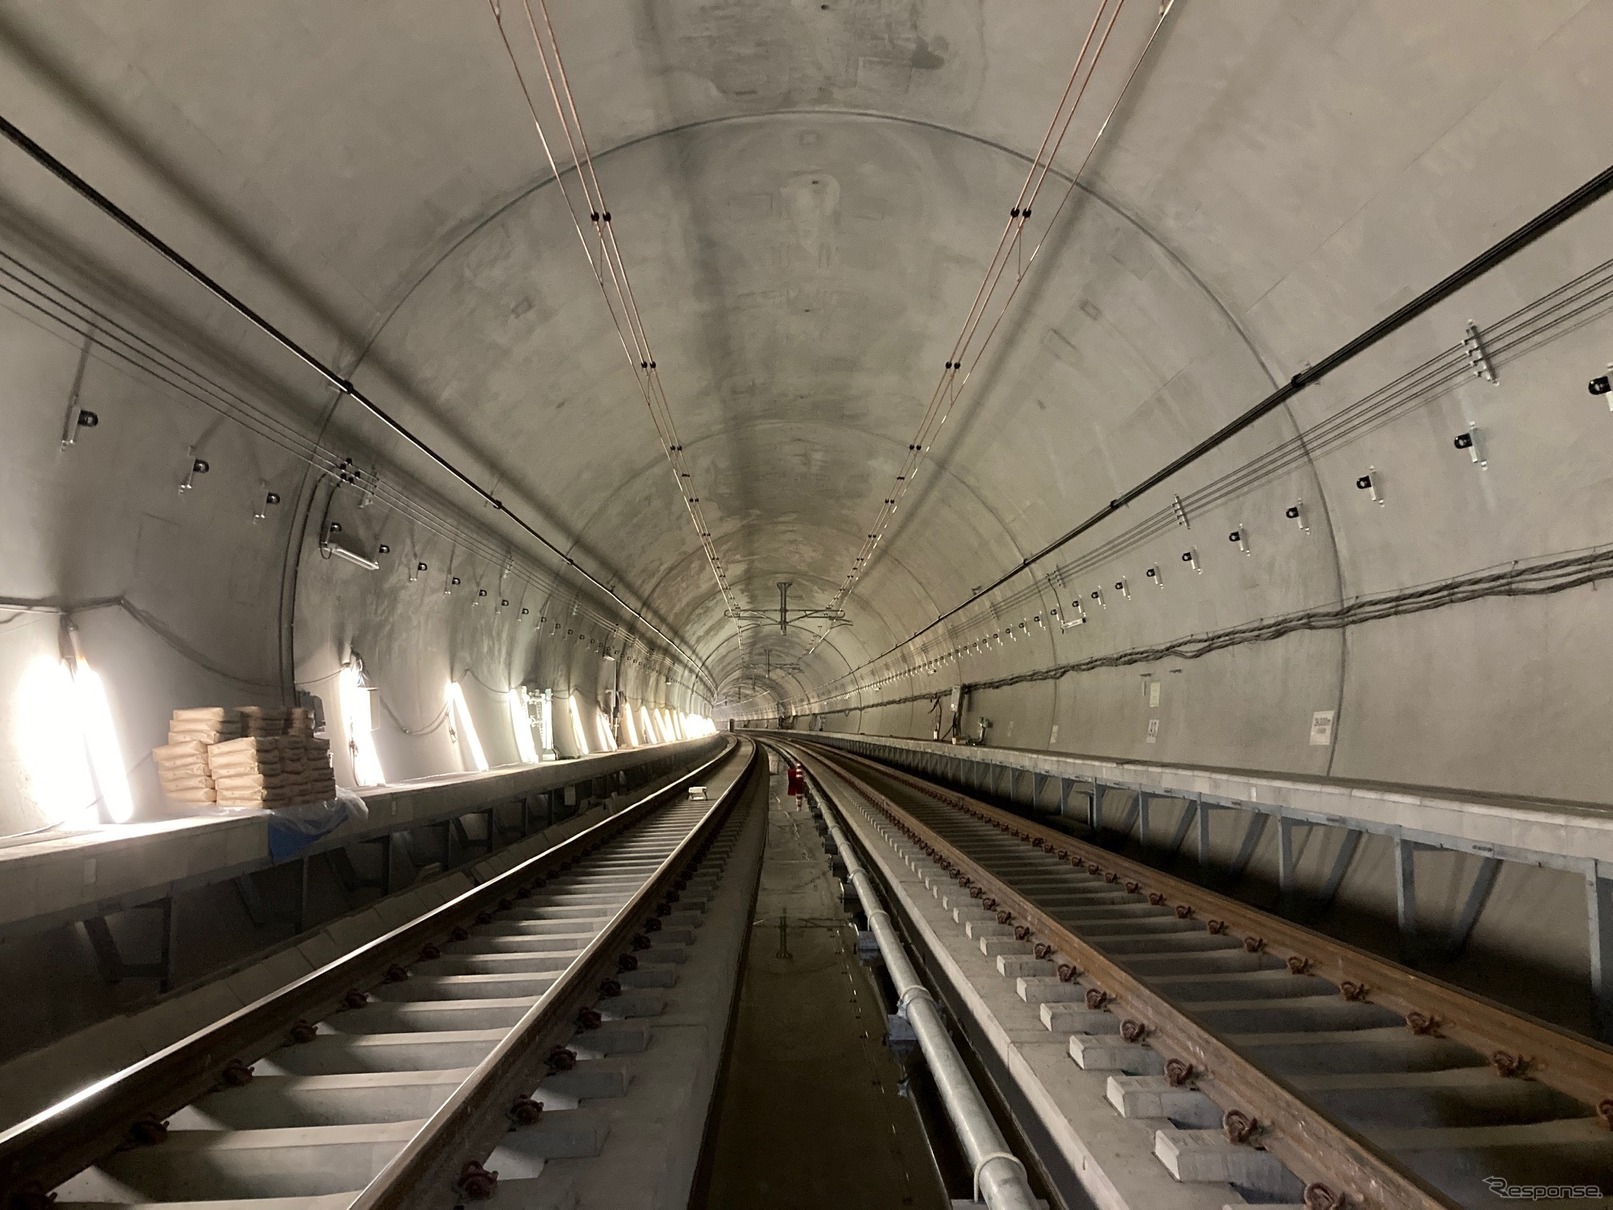 羽沢横浜国大～新横浜間にある羽沢トンネルの工事状況。